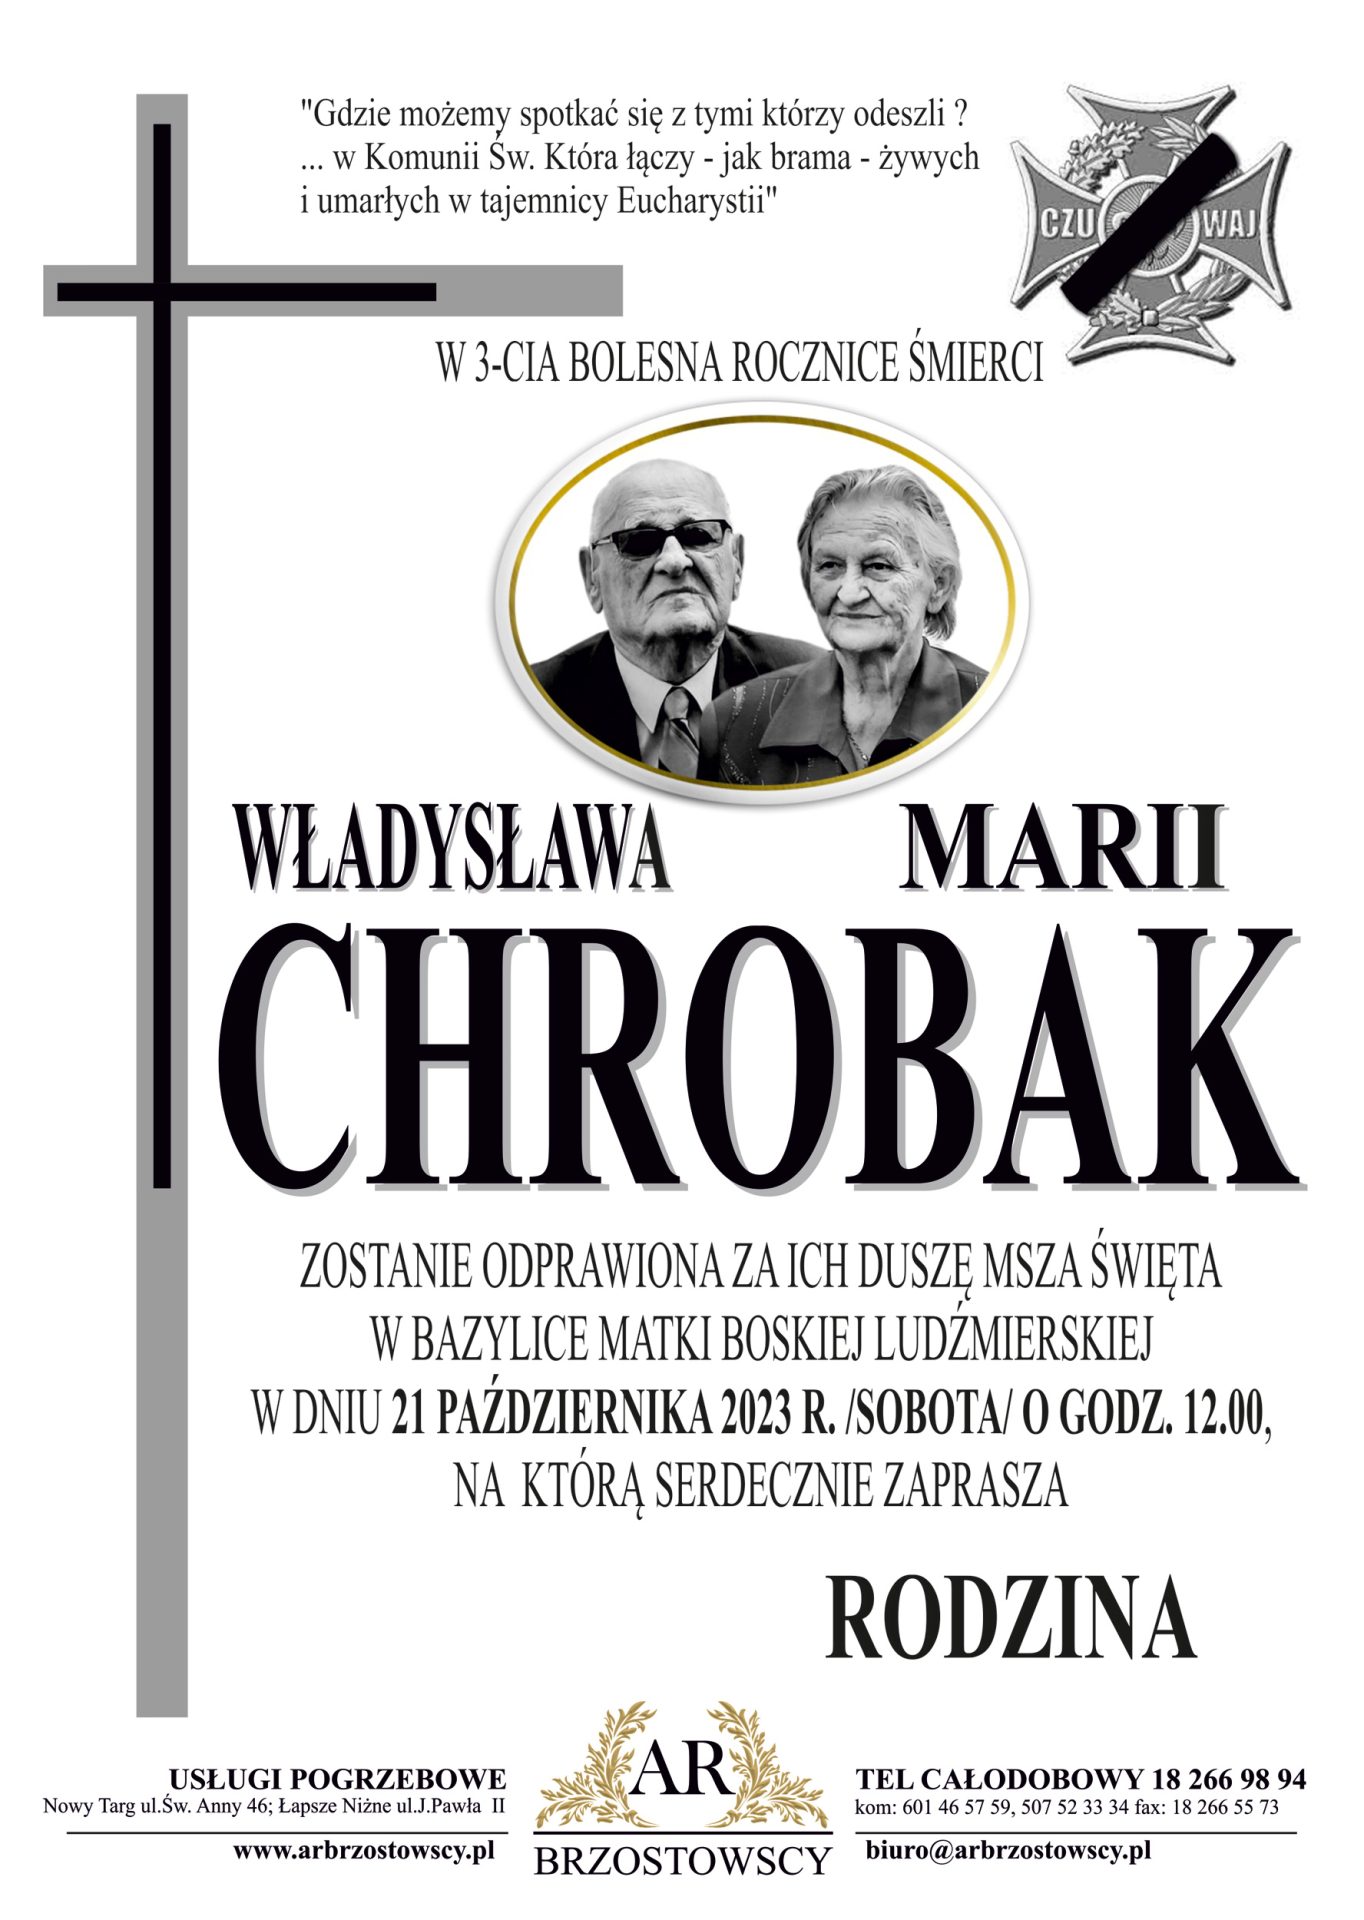 Władysław Maria Chrobakowie